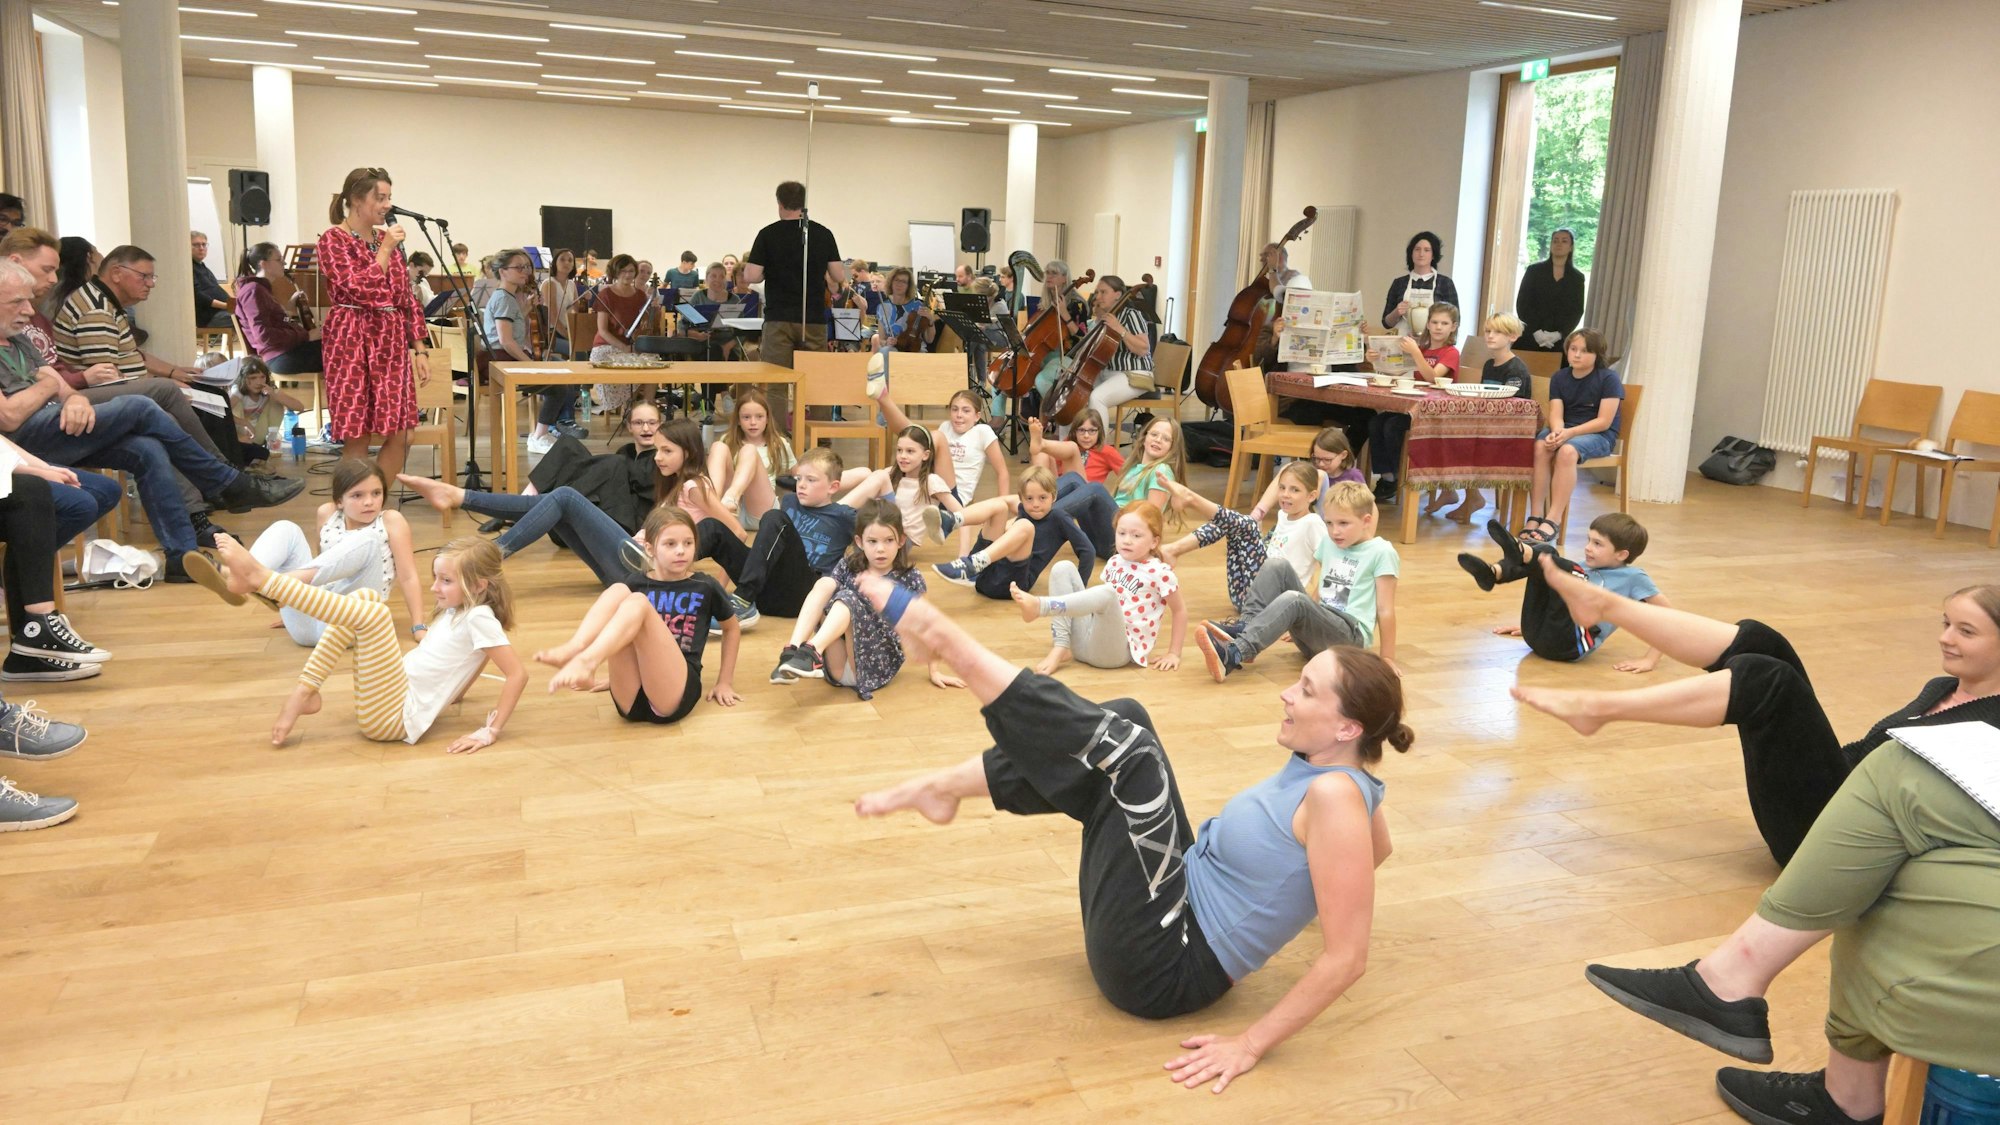 Kinder der Tanzgruppe sitzen auf dem Boden und üben einen Move.